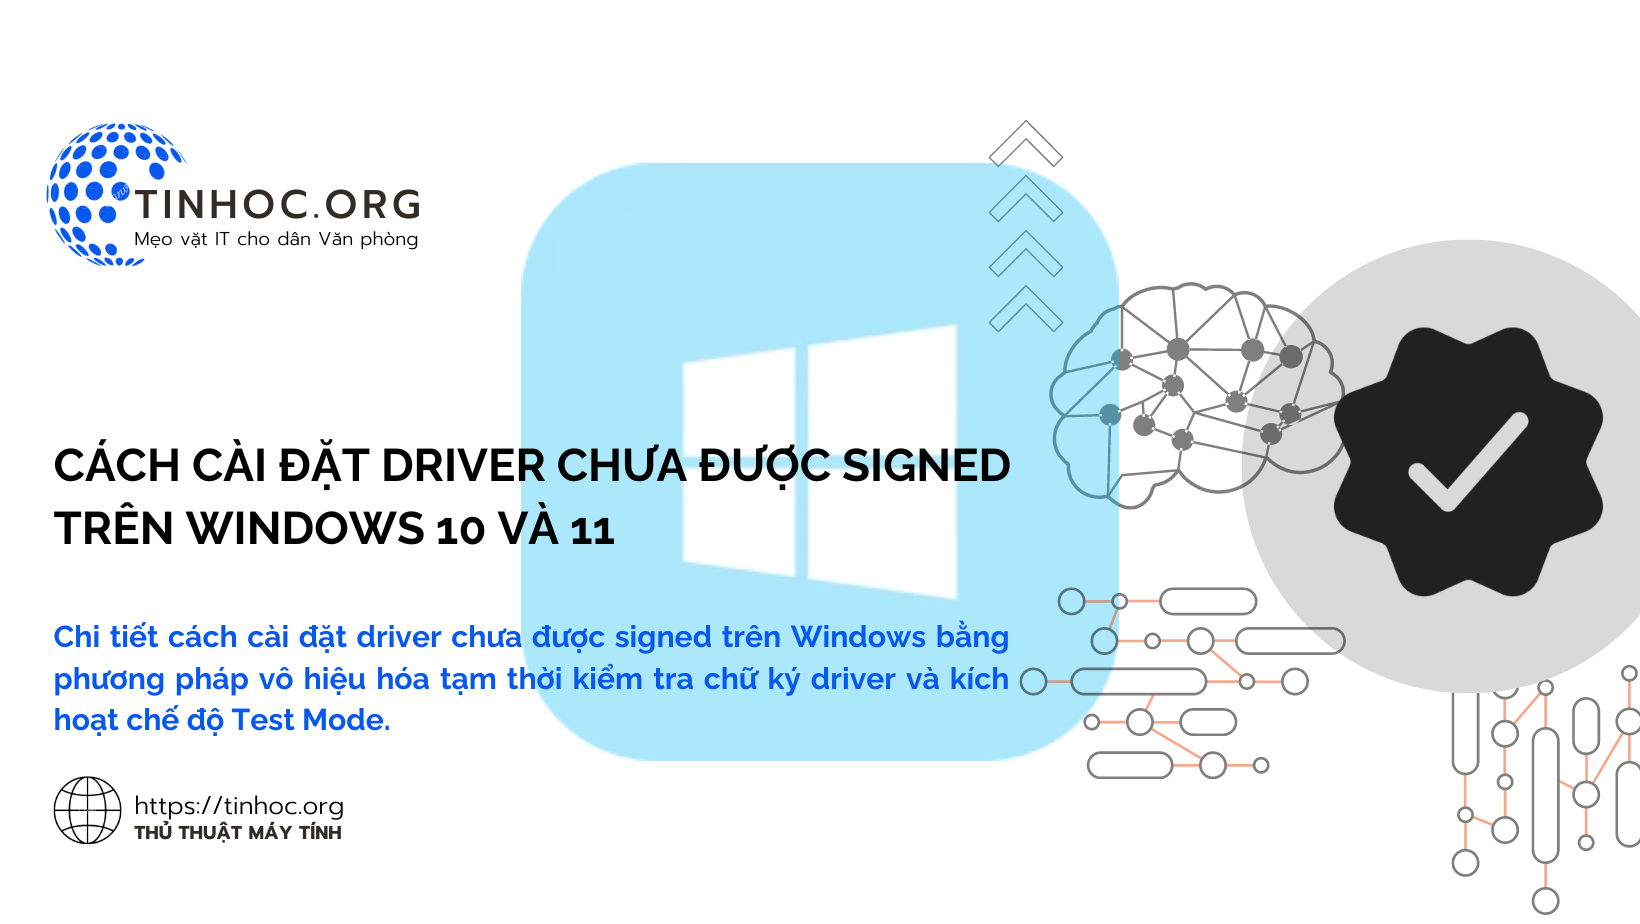 Chi tiết cách cài đặt driver chưa được signed trên Windows bằng phương pháp vô hiệu hóa tạm thời kiểm tra chữ ký driver và kích hoạt chế độ Test Mode.